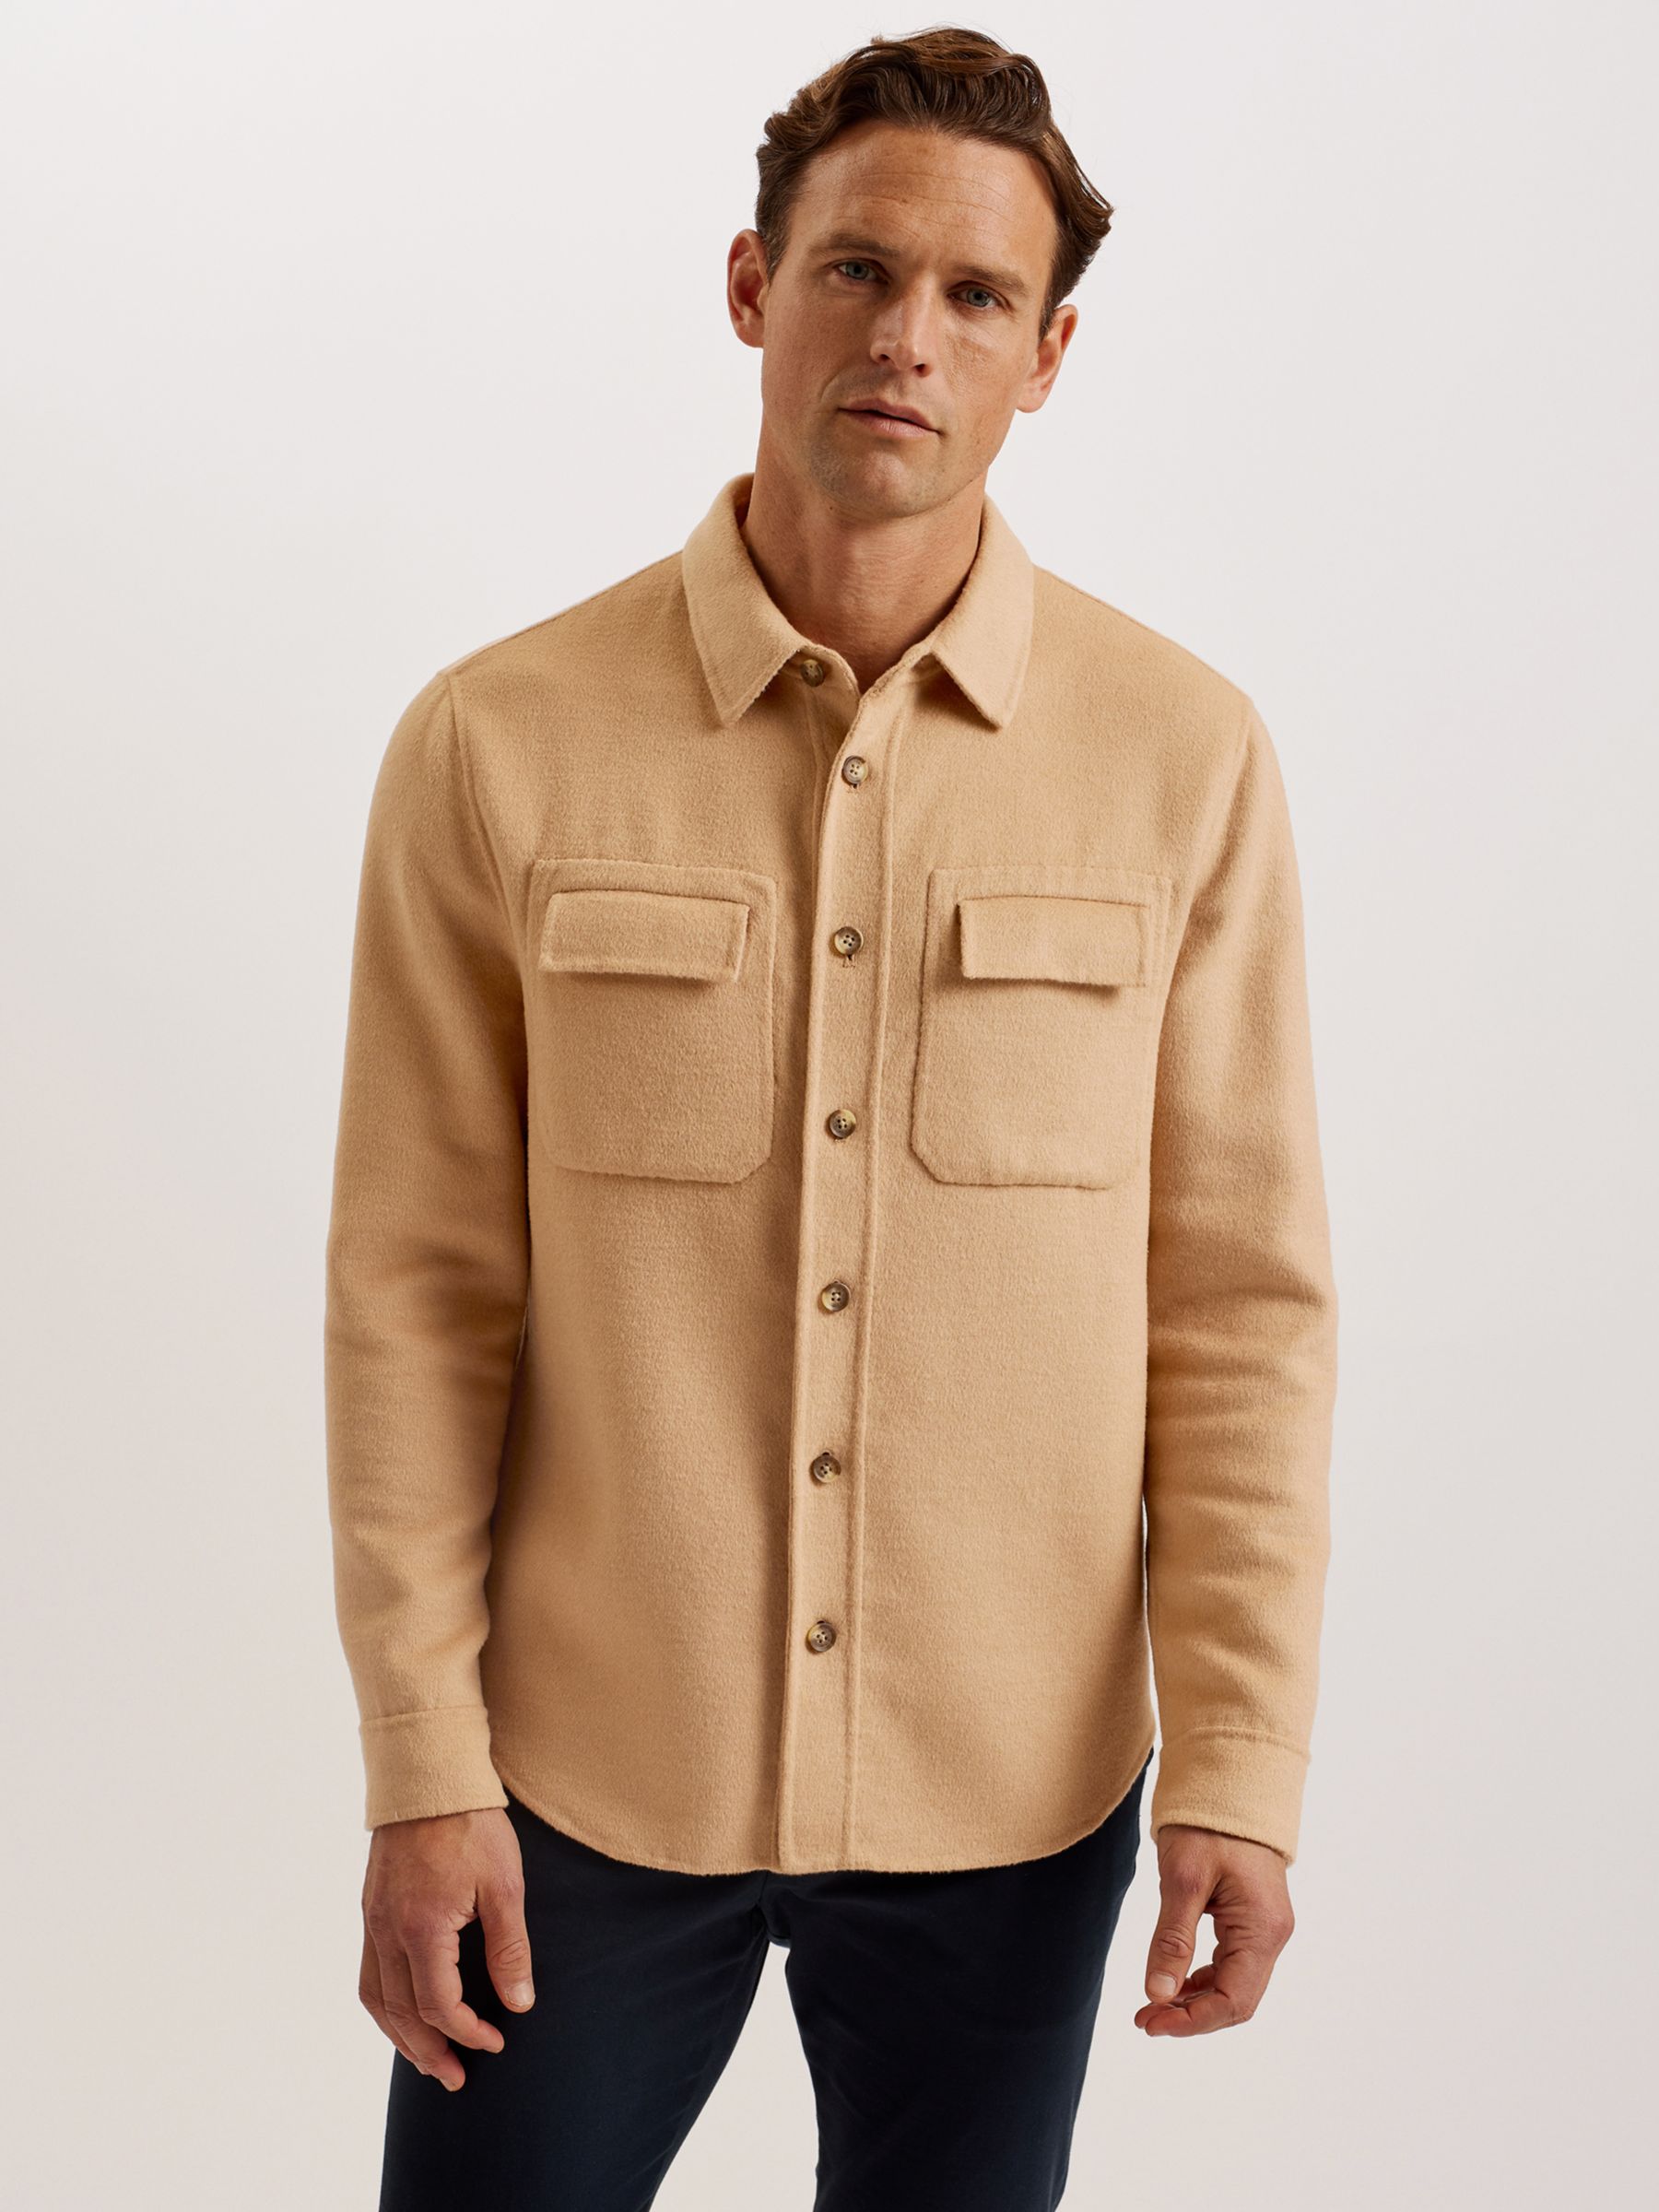 Ted Baker Dalch Long Sleeve Splittable Wool Blend Shirt, Tan, XXXL